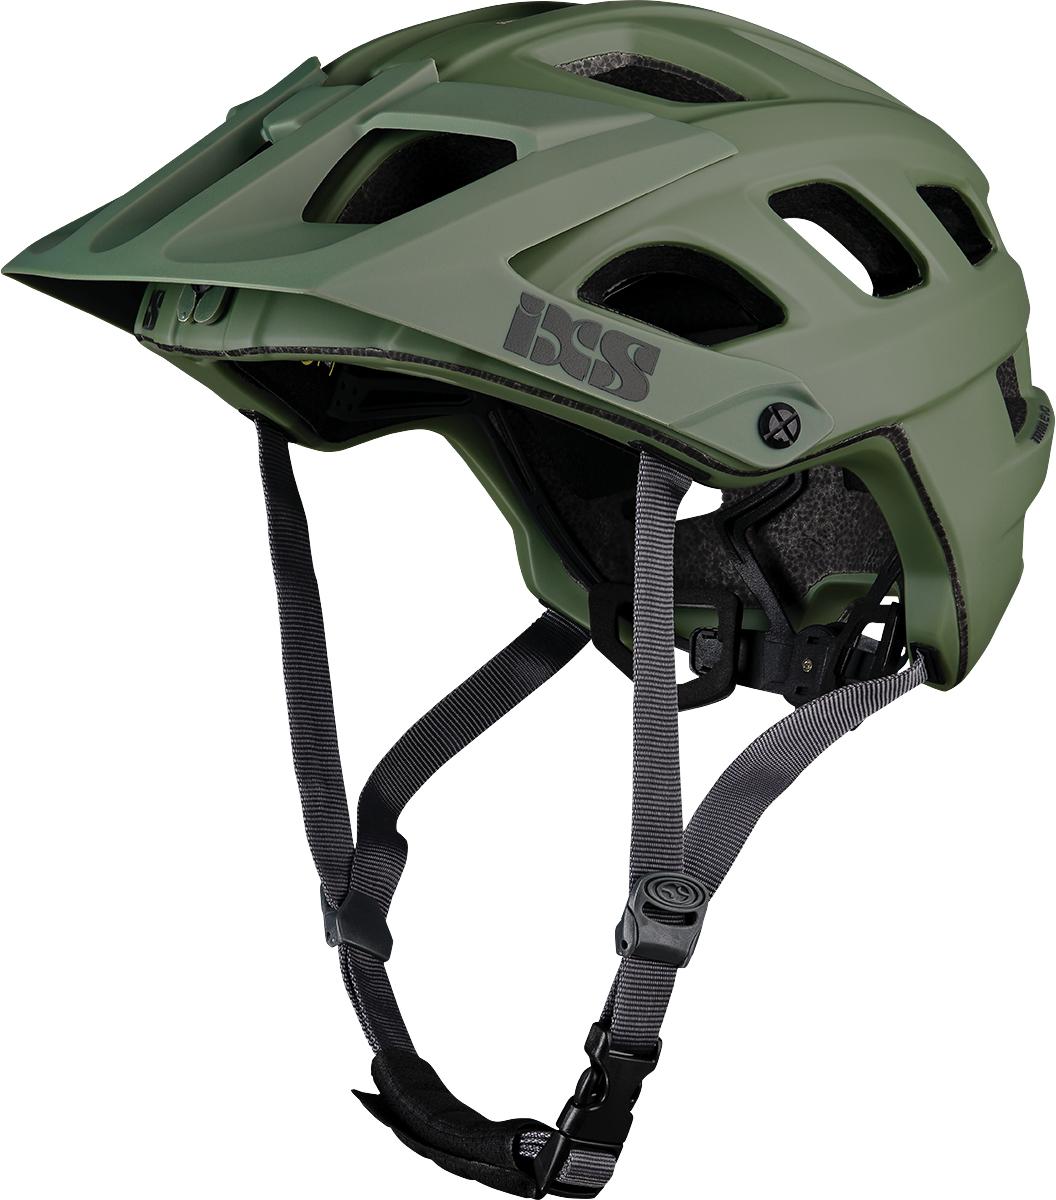 Ixs Trail Evo Mips Mtb Helmet - Sage